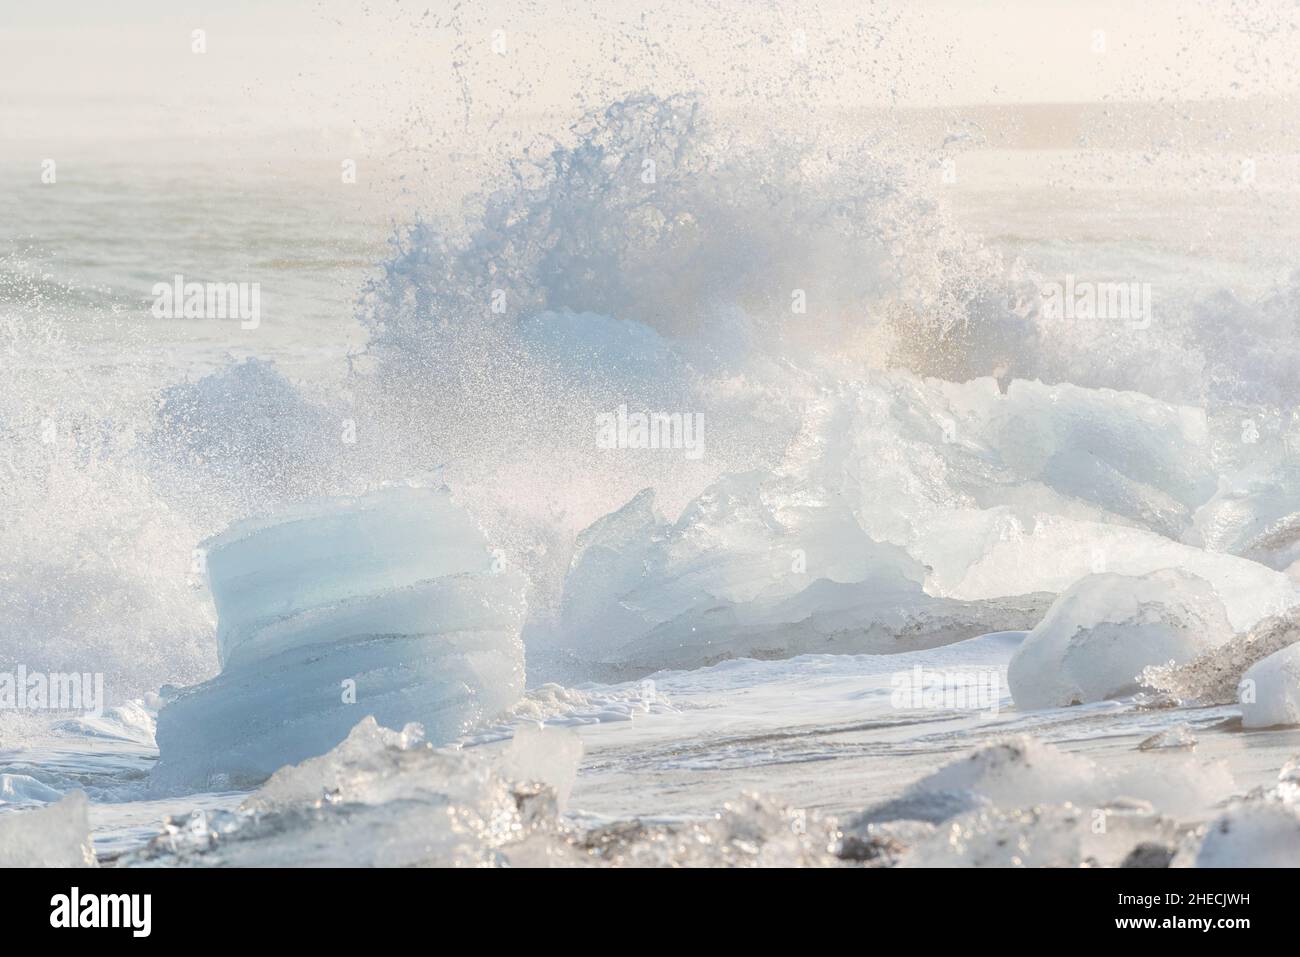 Iceland, Austurland Region, Breidamerkursandur, Diamond Beach next to Jokulsarlon, iceberg on the sand Stock Photo